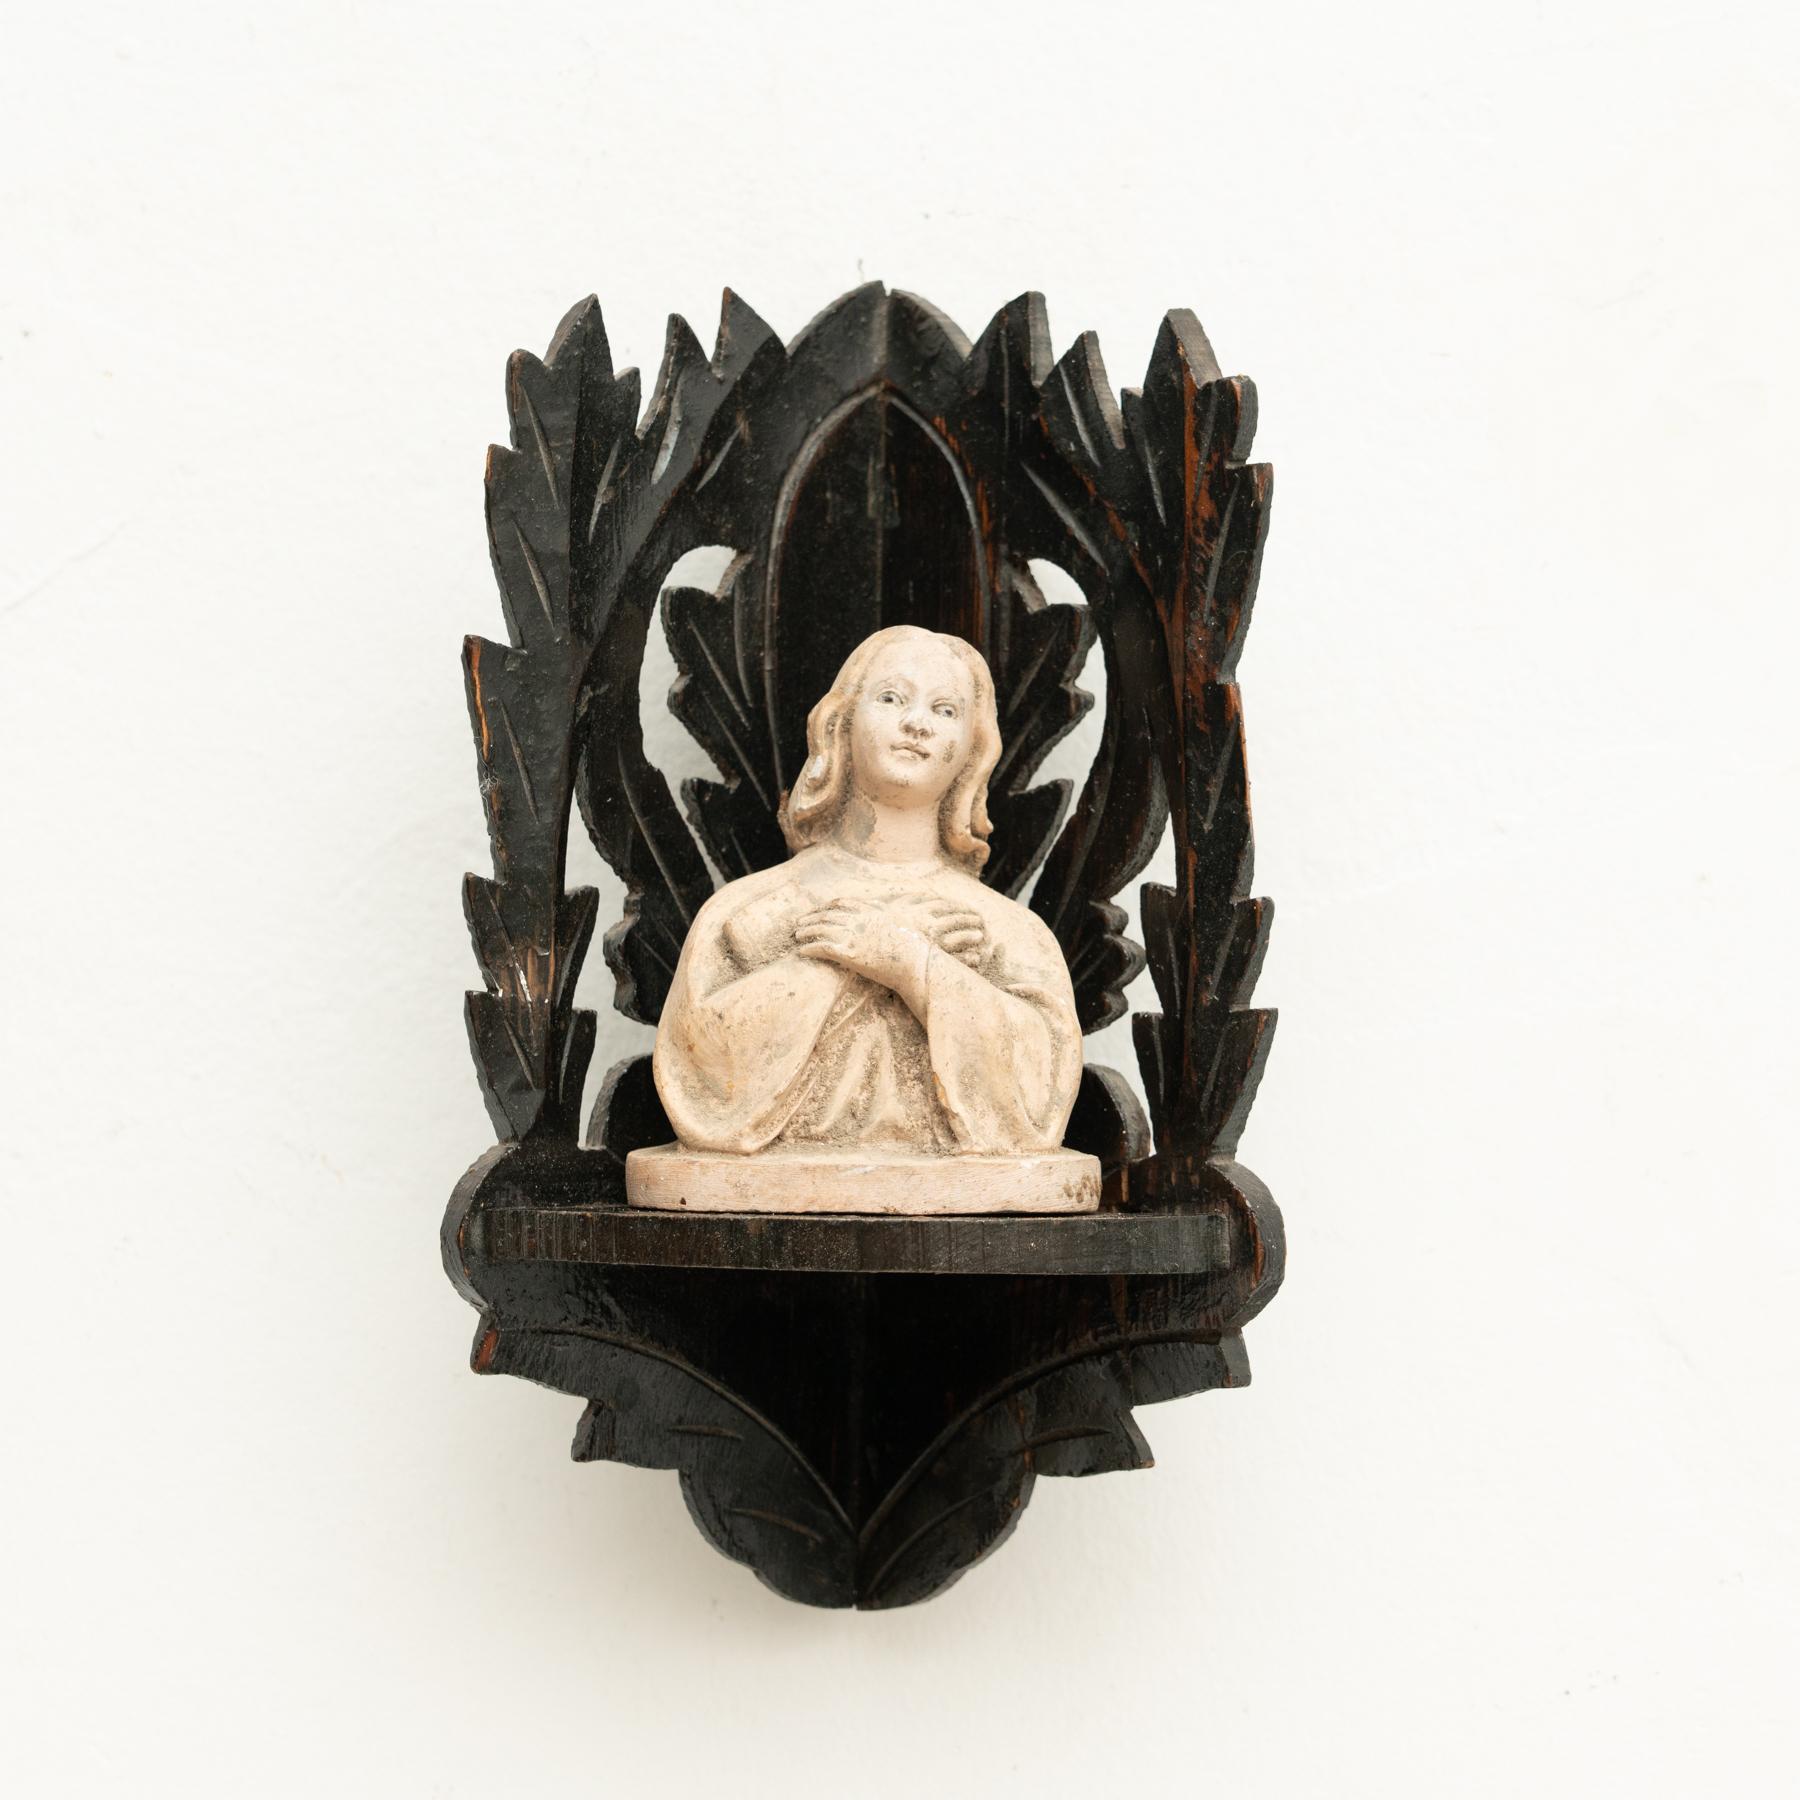 Figure religieuse traditionnelle en plâtre représentant une vierge dans un autel en bois.

Fabriqué dans un atelier catalan traditionnel à Olot, en Espagne, vers 1950.

En état d'origine, avec une usure mineure conforme à l'âge et à